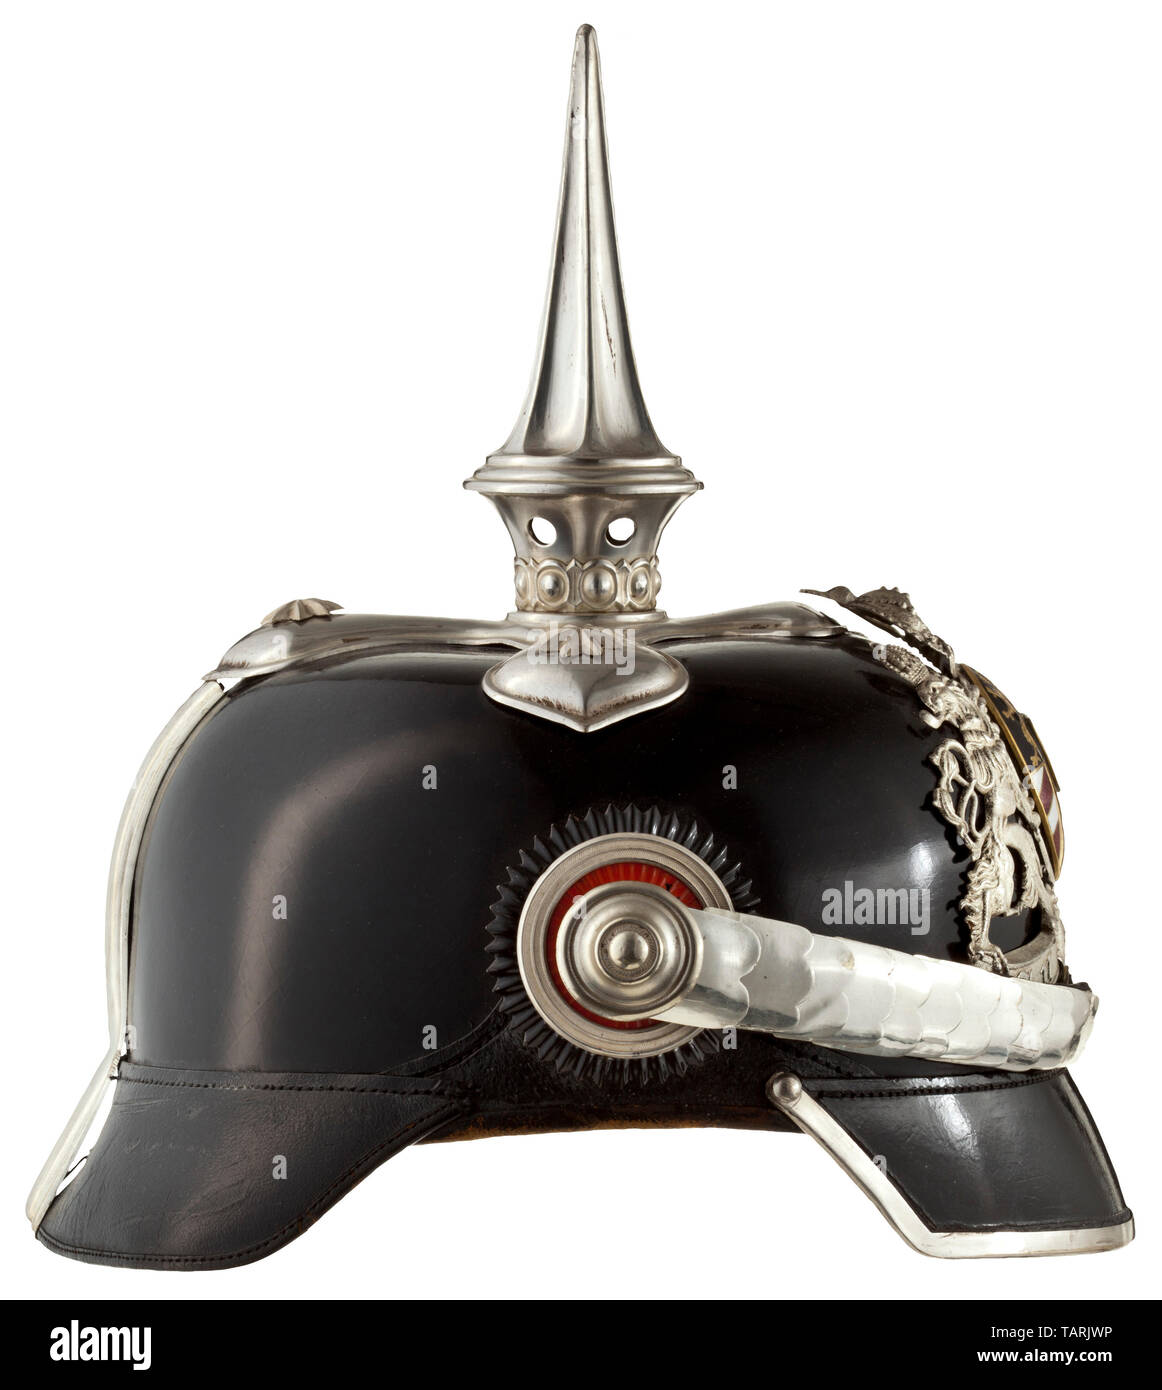 Ein Helm M 1886/1913 für Generäle, Exhibit los, mit original Helm ist ein Offizier mit Re - versilbert Armaturen und eine moderne Medaillon. Schwarz lackierten, polierten Schädel mit versilberten Beschlägen, der Innenraum zusätzlich in Violett gesäumt - farbige fühlte, mit dem Etikett des Herstellers AWES Marke' und die Größe '57'. Die hintere Sonnenblende neu befestigt. Die Visiere gesäumt in Grün und Rot, feine braune Leder Schweißband mit grünen Gerippte silk Liner, die ungültig gewordene Ausrüstung Stempel. Auf der Vorderseite, geschient kreuzförmigen Sockel mit Stern -, Additional-Rights - Clearance-Info - Not-Available Stockfoto